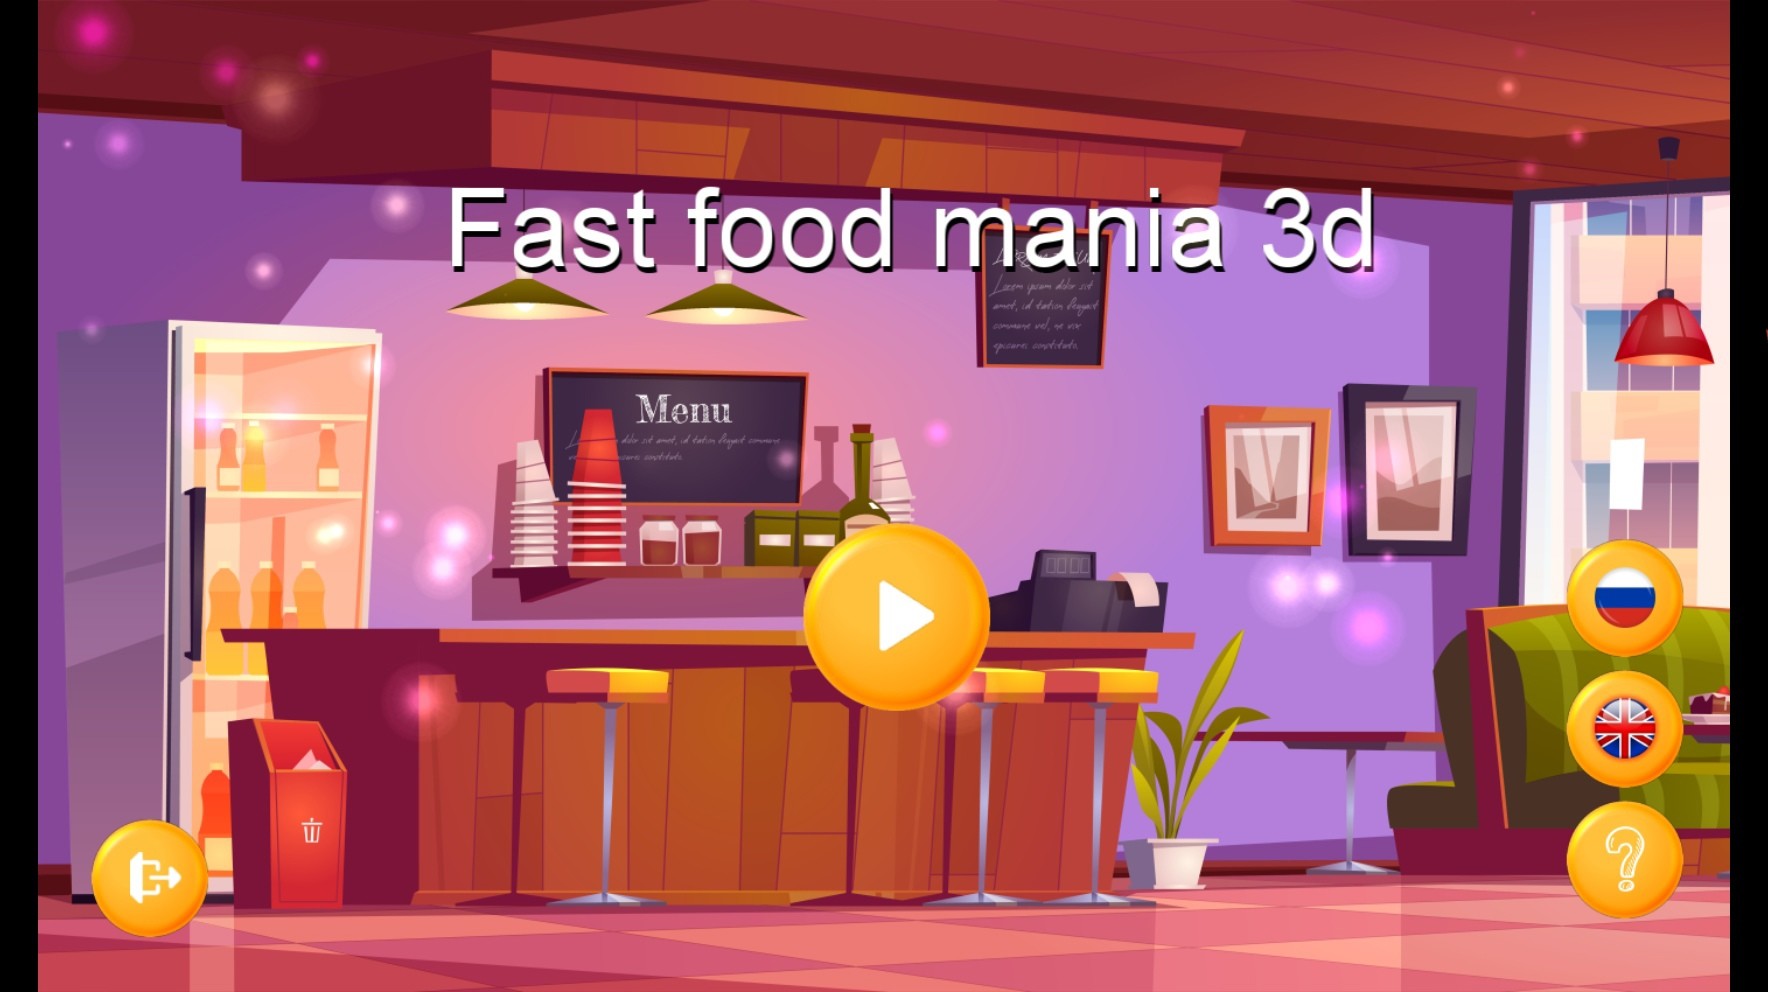 Fast Food Mania 3D Steam CD Key 4.01 $